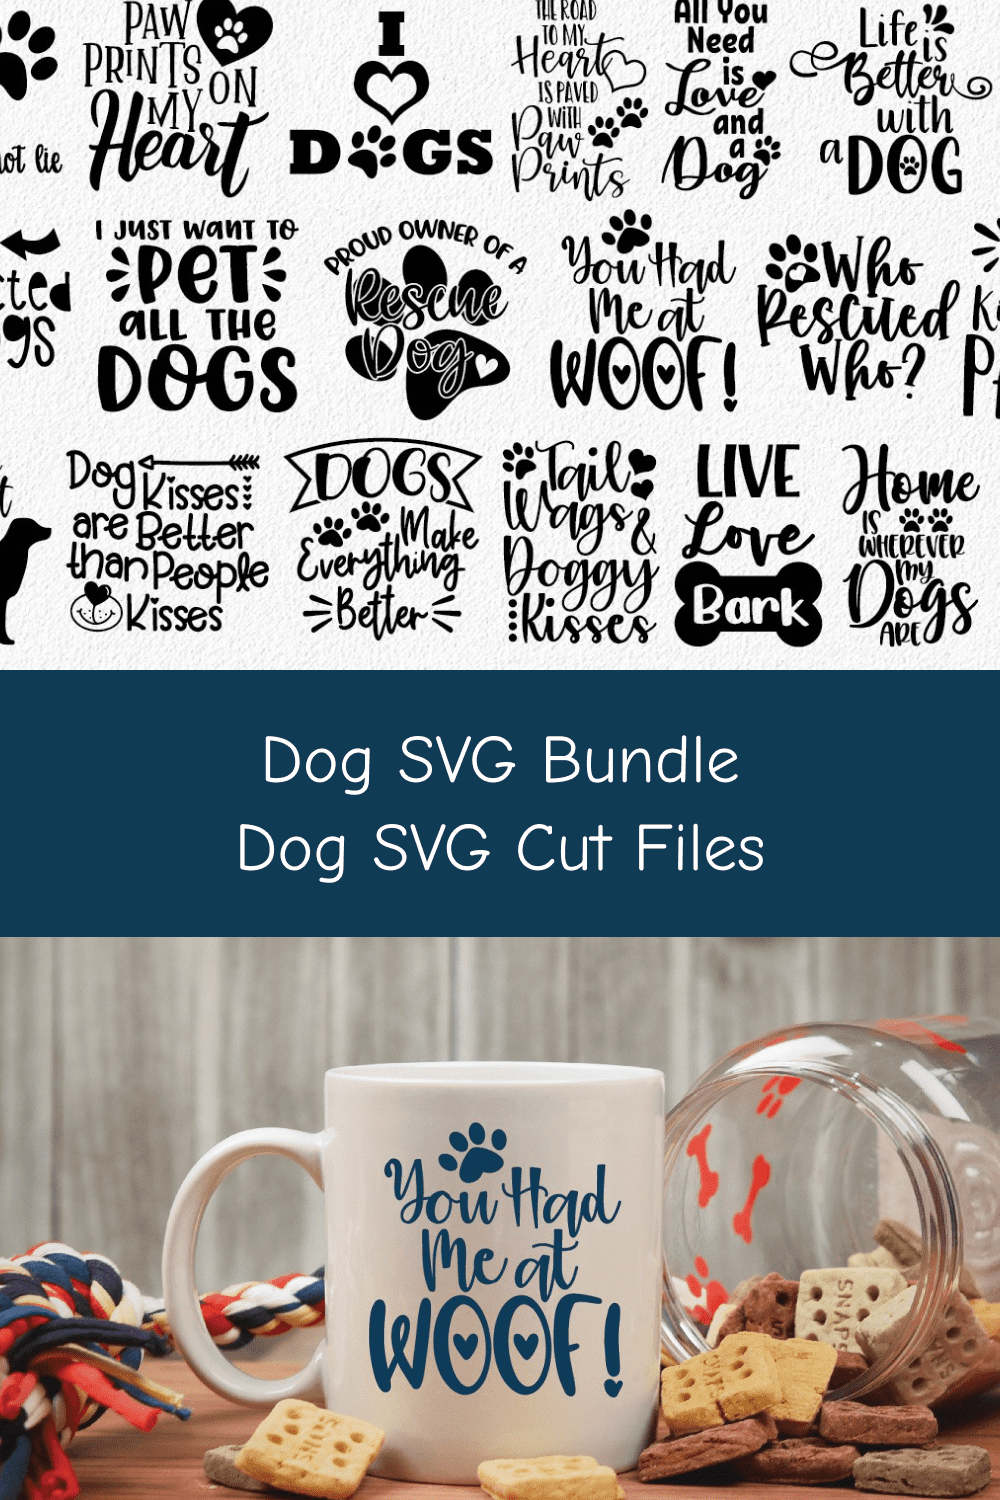 Dog SVG Bundle - Dog SVG Cut Files.